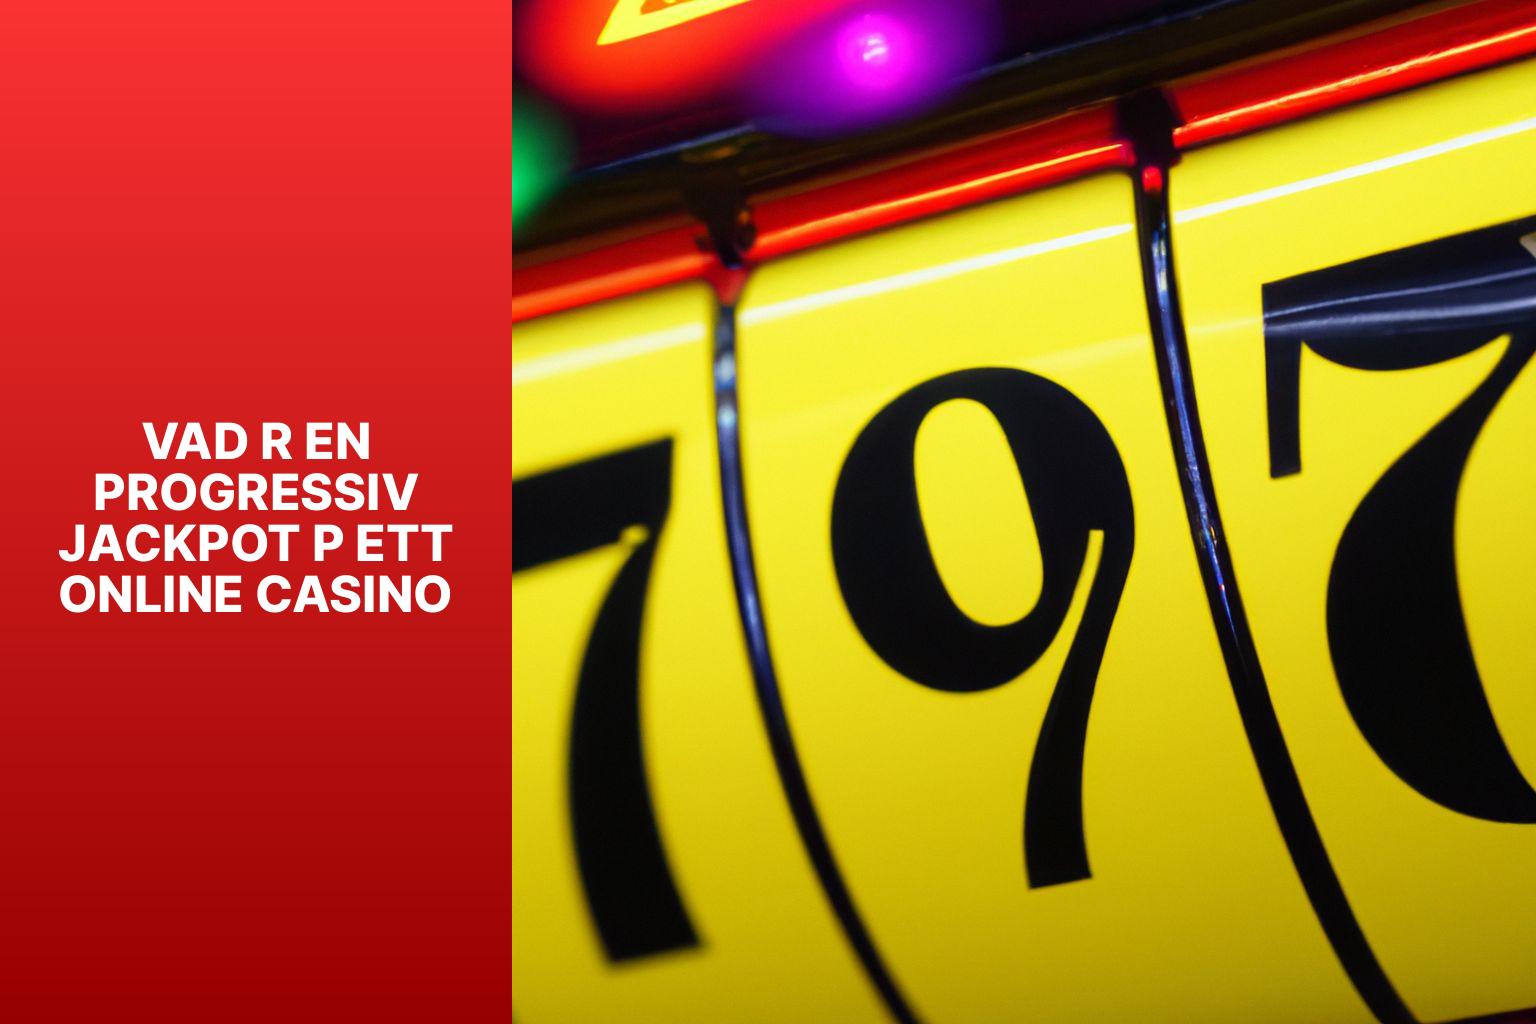 Vad r en progressiv jackpot p ett online casino